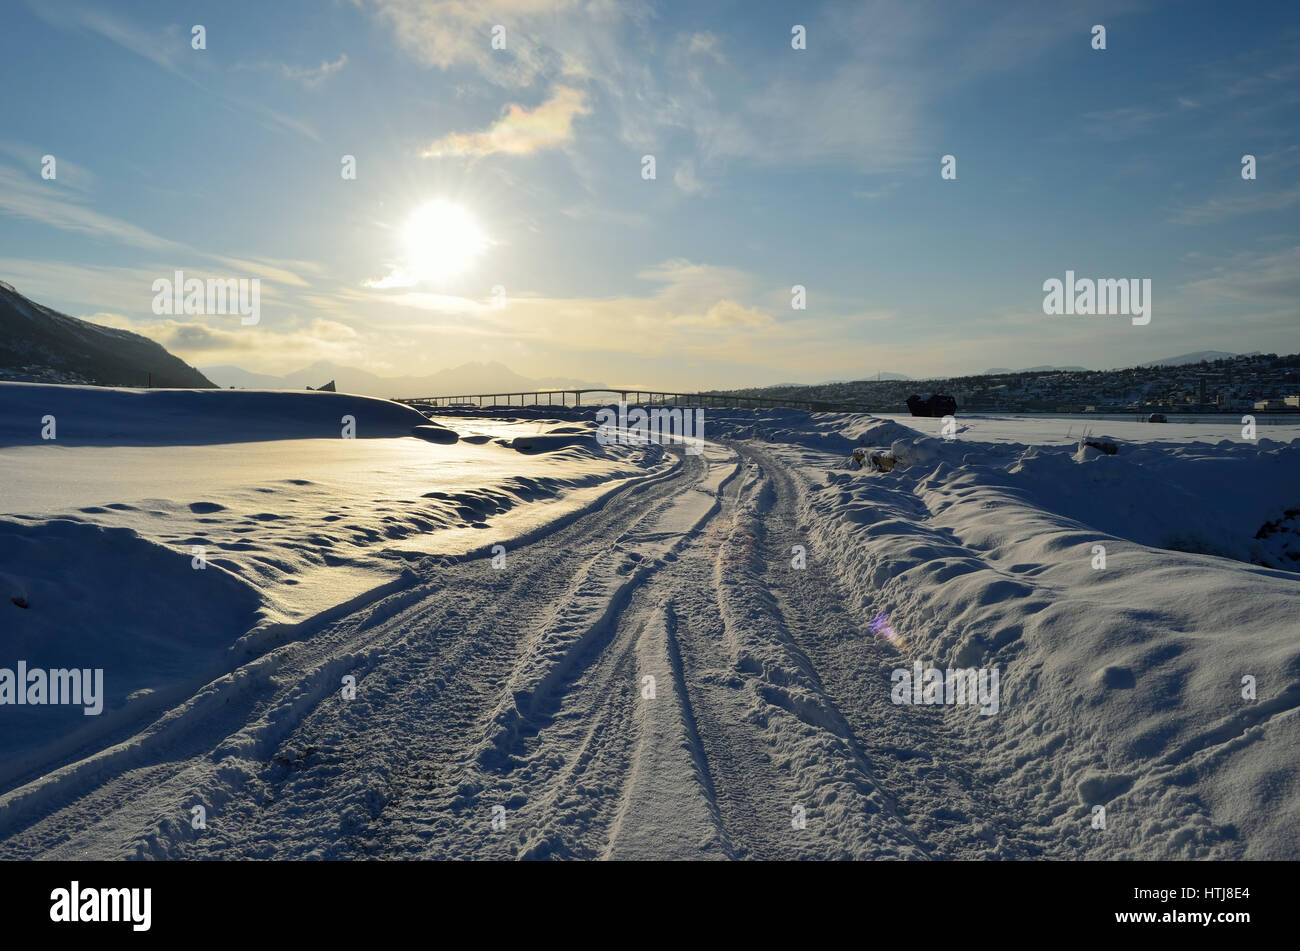 Carretera nevada con tromsoe City Island en el fondo al amanecer con el cielo azul Foto de stock